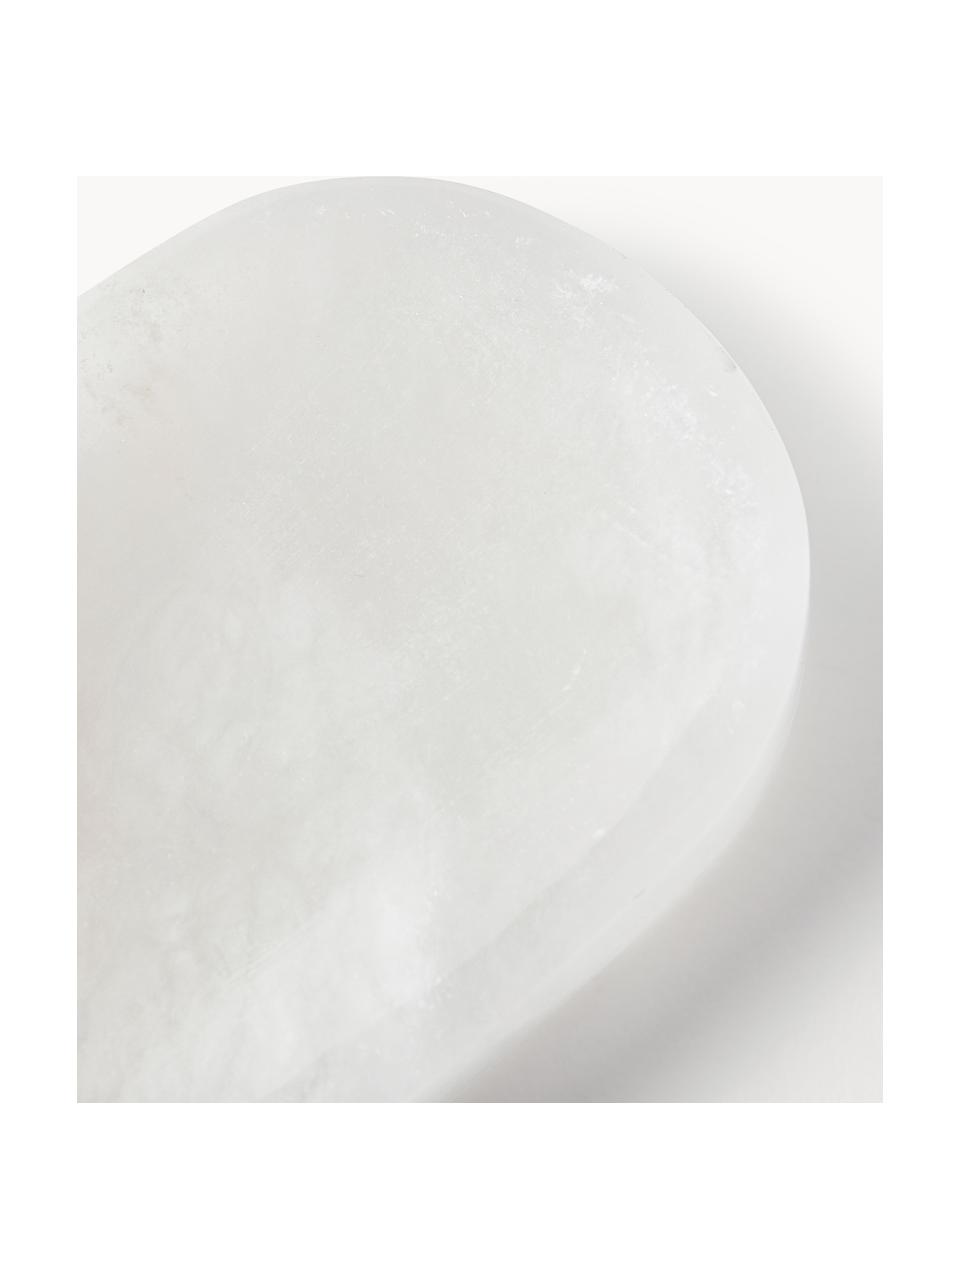 Seifenschale Valo aus Alabaster, Alabaster, Weiß, B 14 x T 10 cm